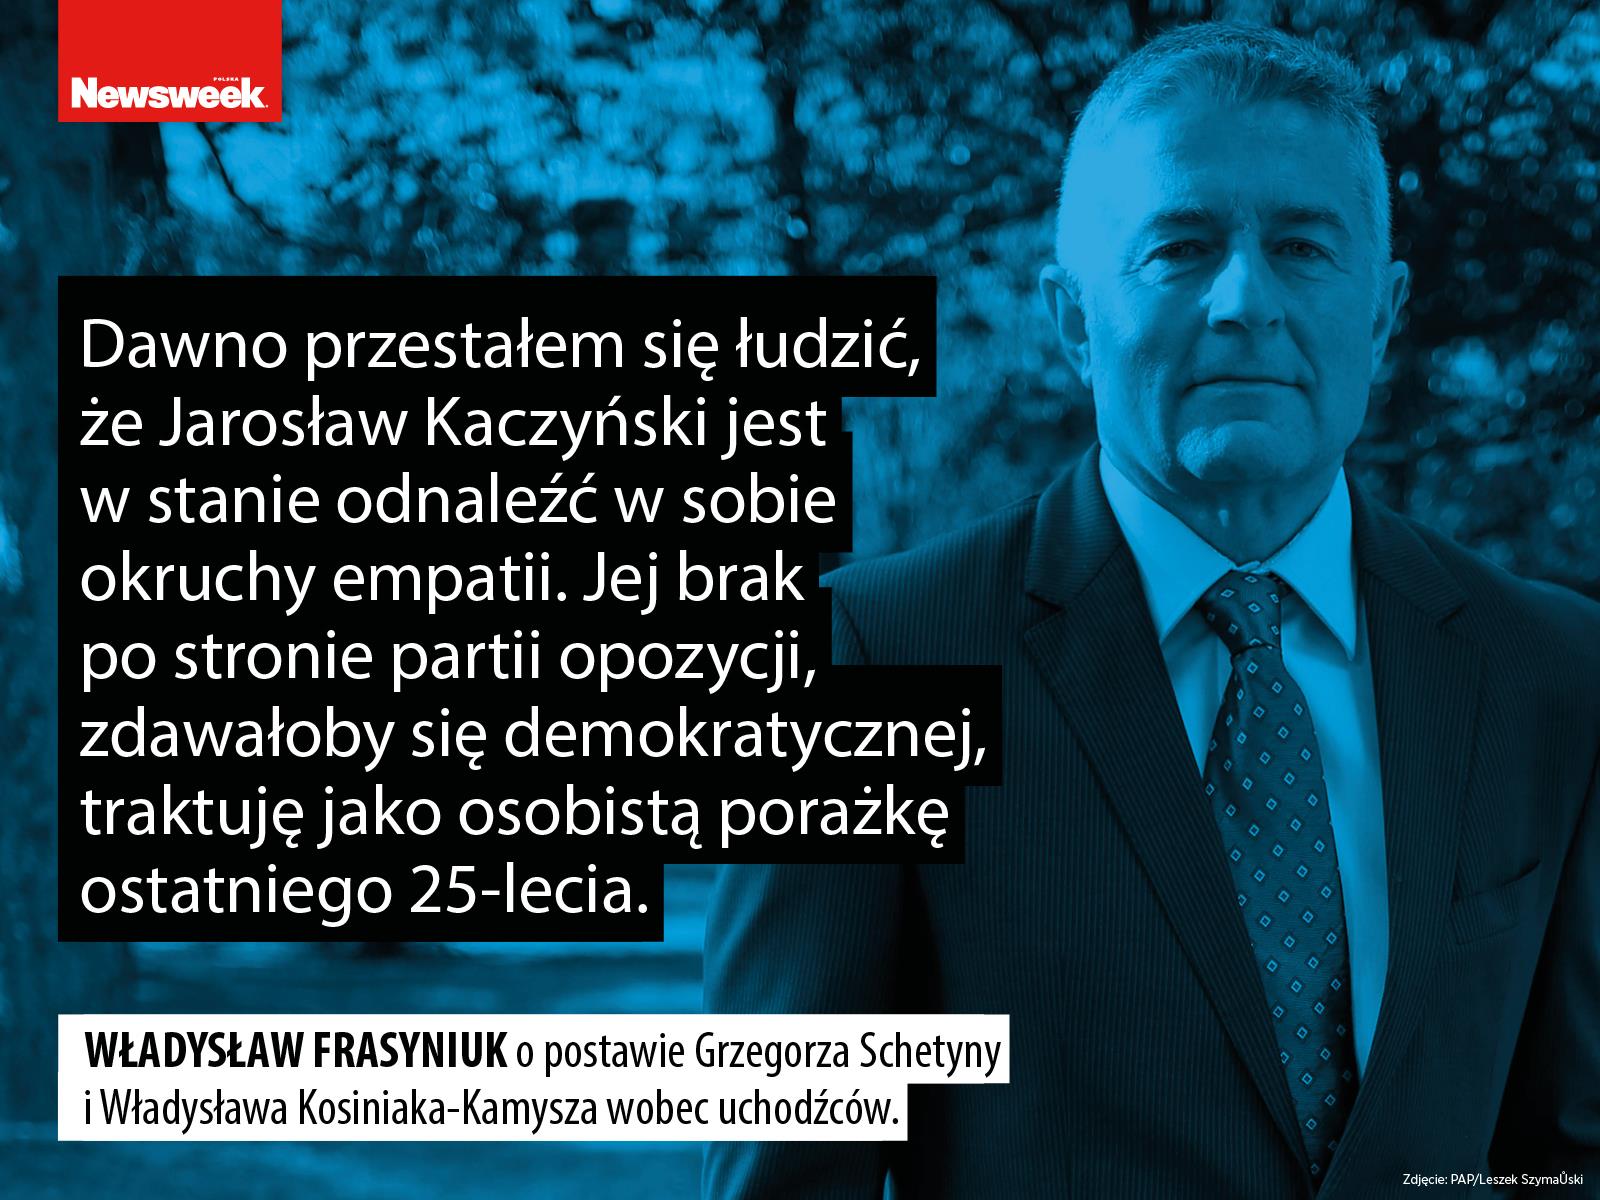 Władysław Frasyniuk